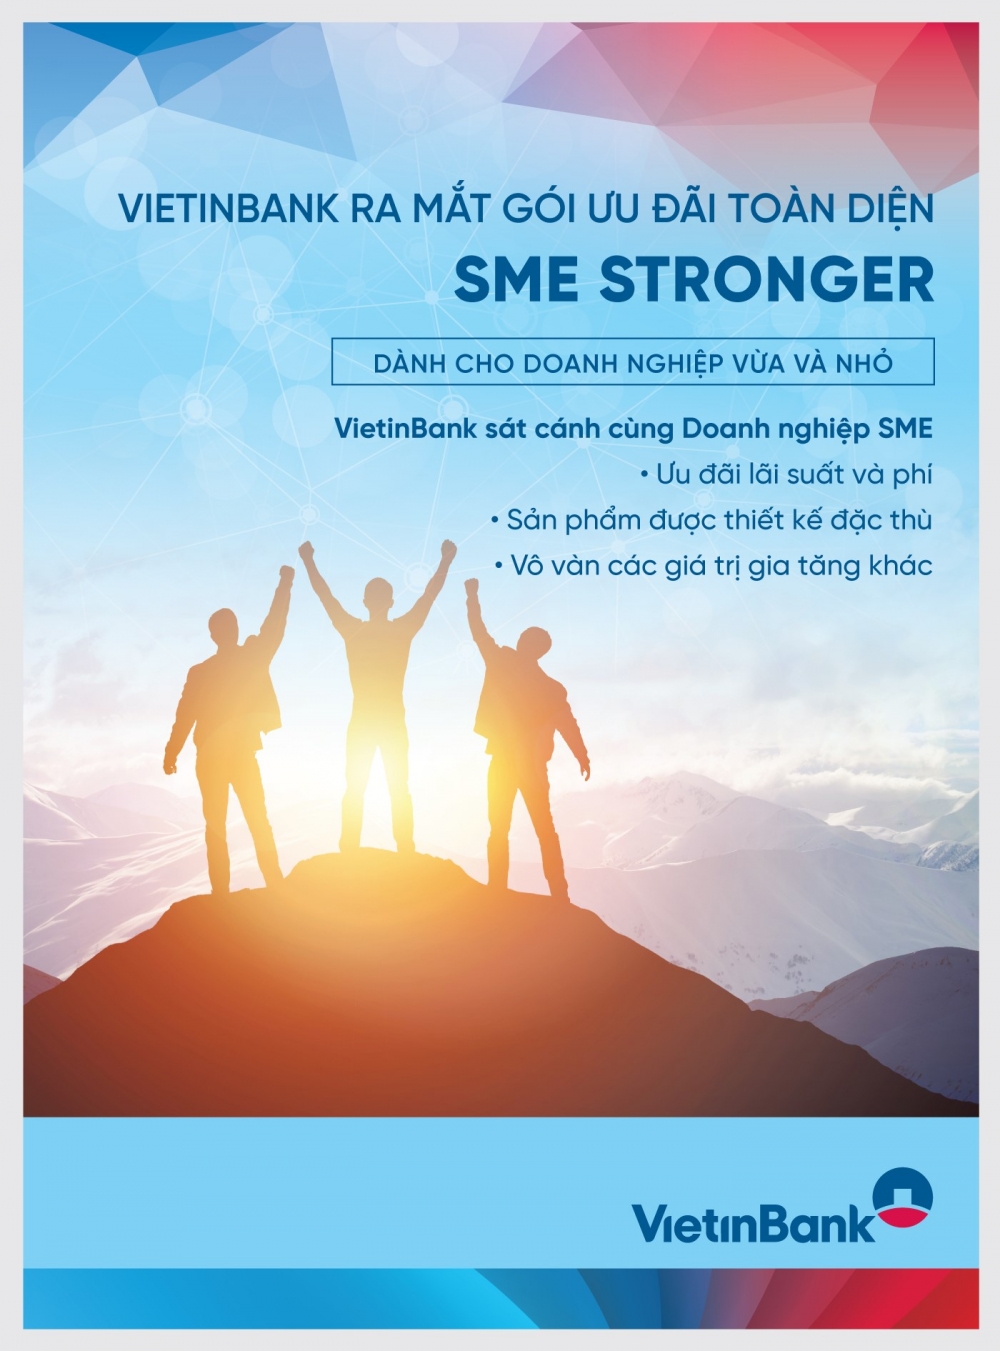 VietinBank triển khai gói ưu đãi toàn diện cho phân khúc khách hàng SME